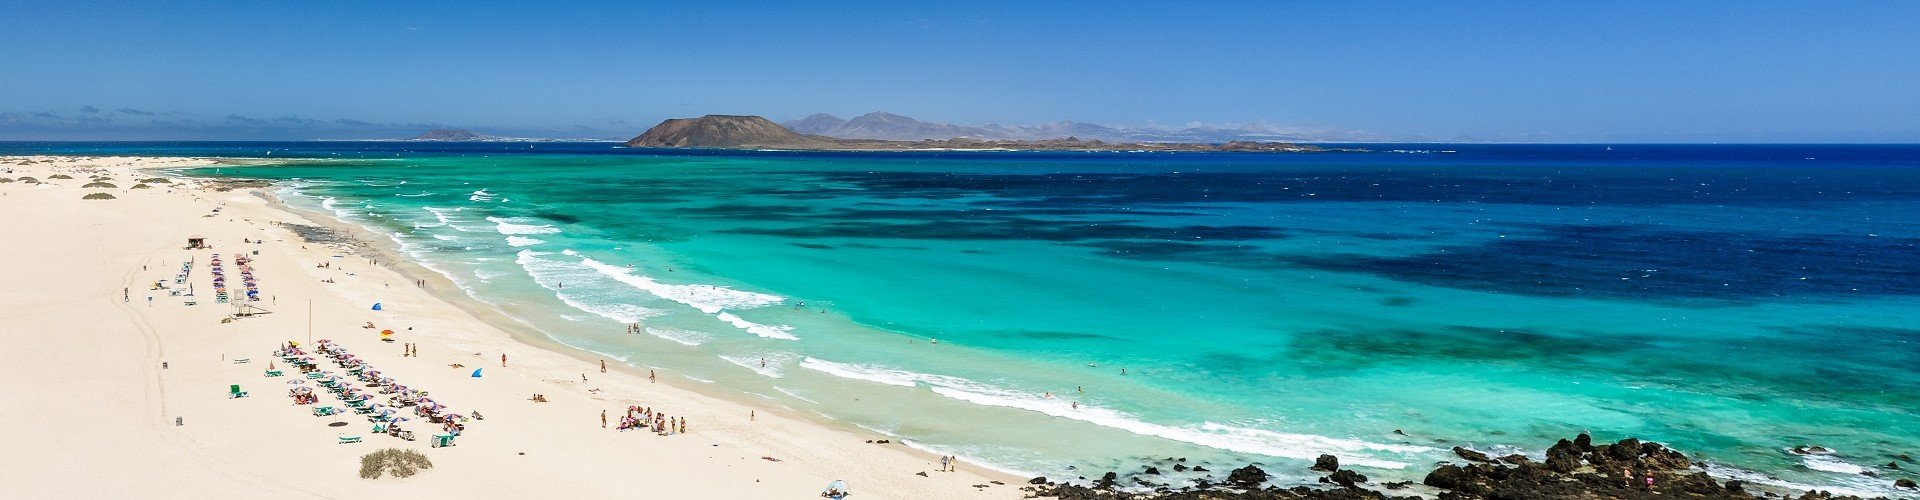 10 gute Gründe für die Kanarischen Inseln